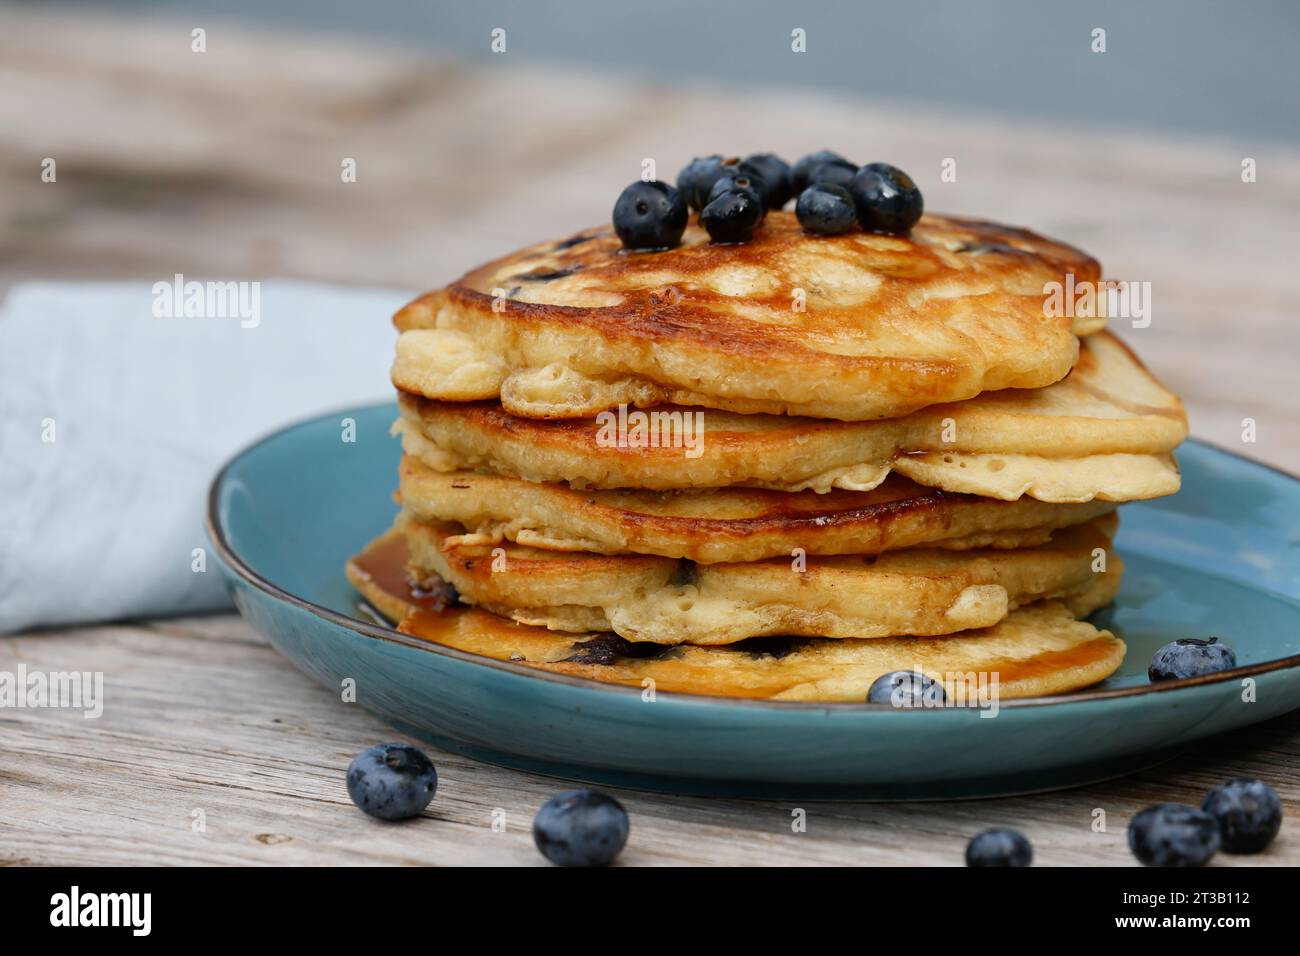 Blaubeer-Pancakes, Pancake, Pancakes, Pfannkuchen, Blaubeeren-Pfannkuchen, Pfannekuchen, Blaubeere, Heidelbeere, Blaubeeren, Heidelbeeren, Blau-Beere, Foto Stock